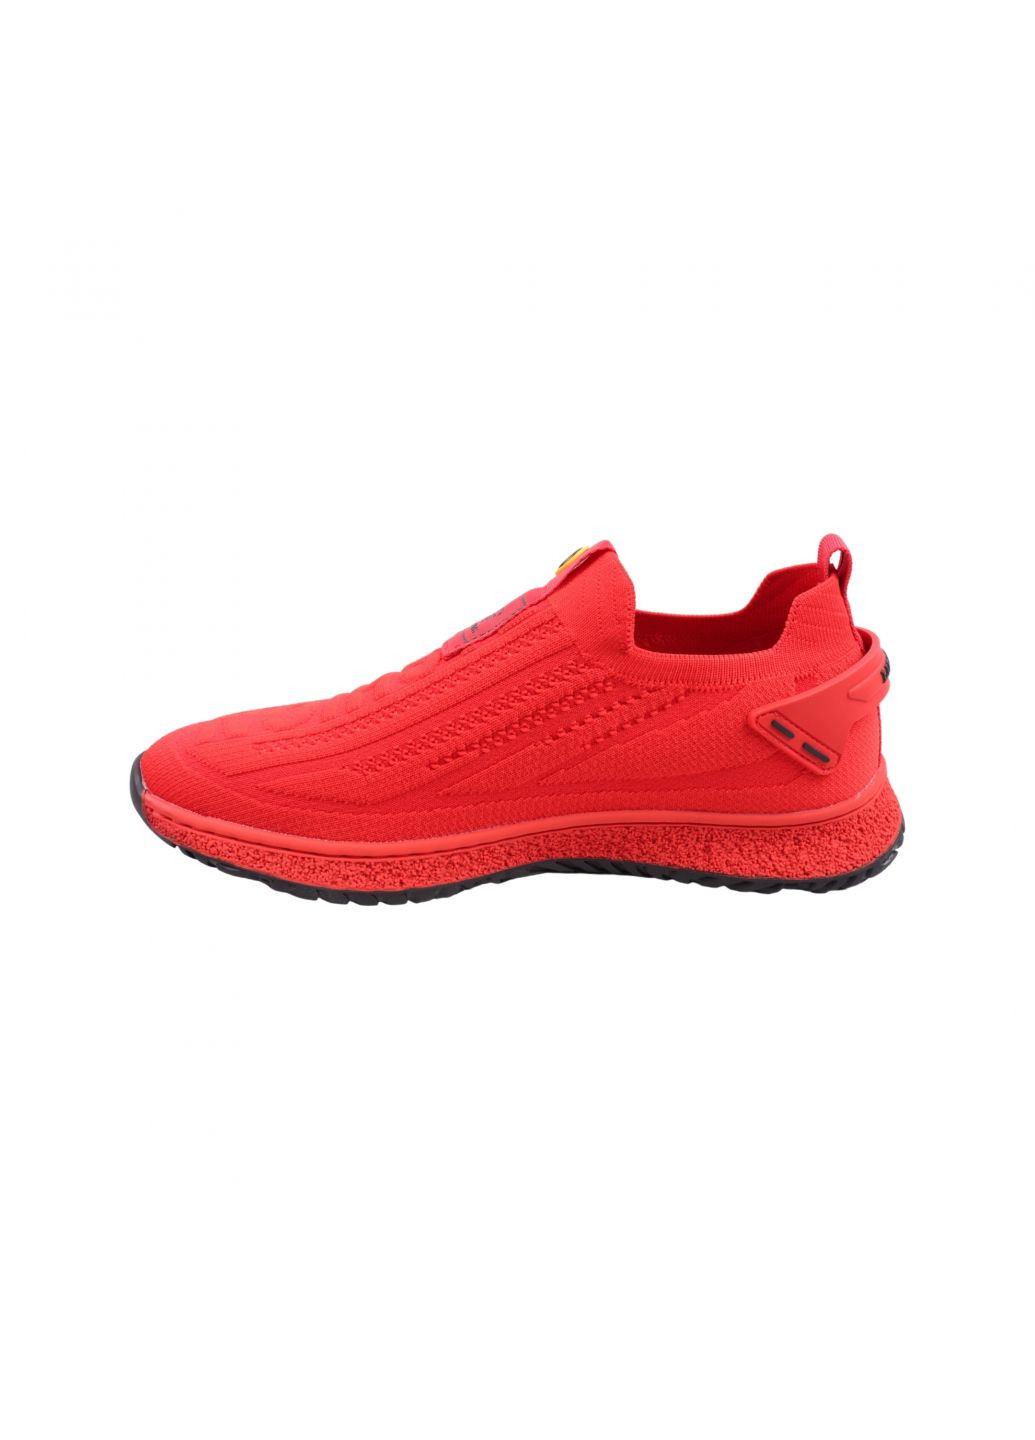 Красные кроссовки мужские красные текстиль Lifexpert 1340-23LK